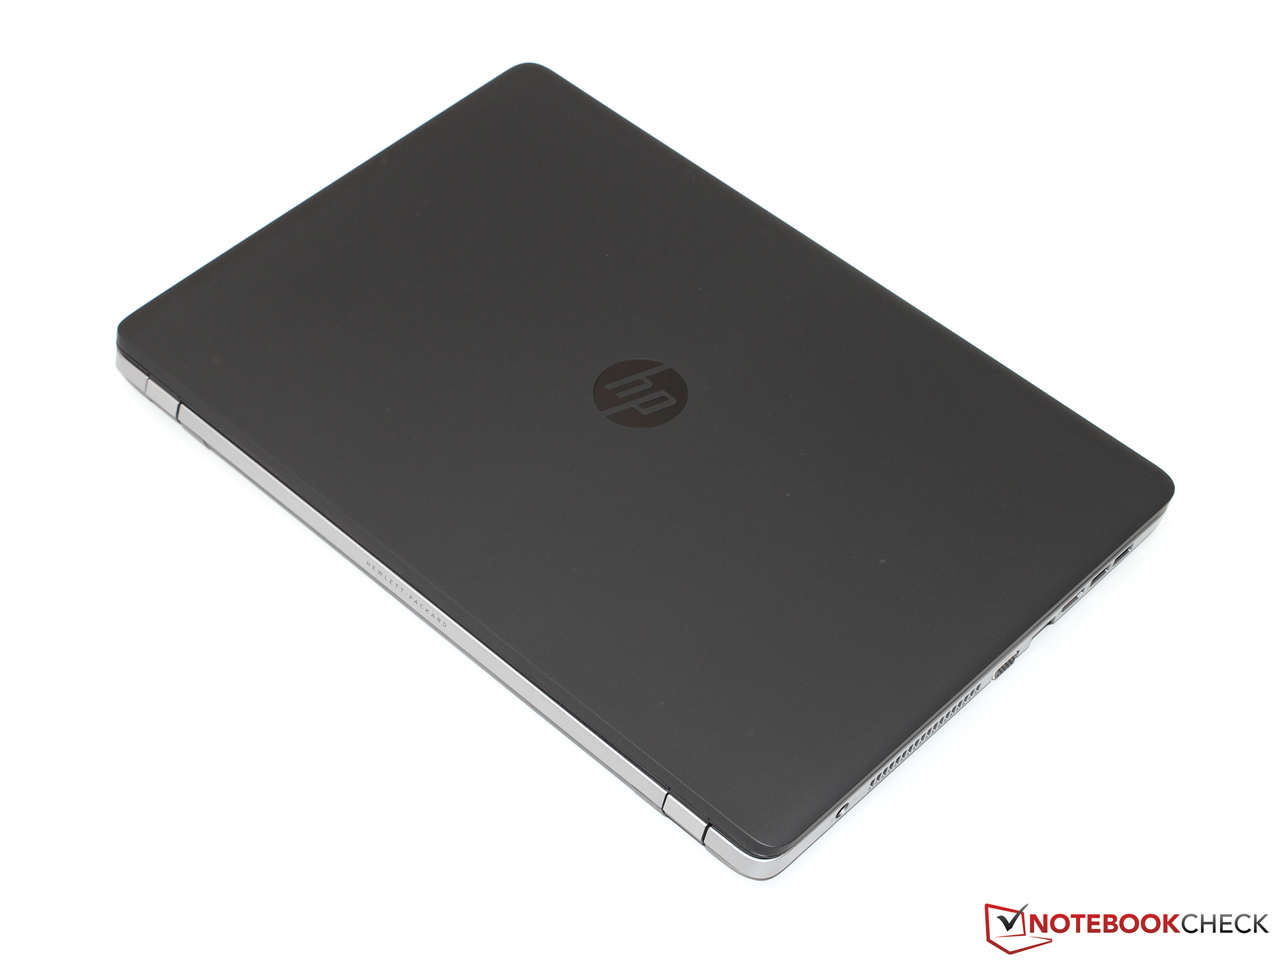 ProBook 470 G2 Notebook PC